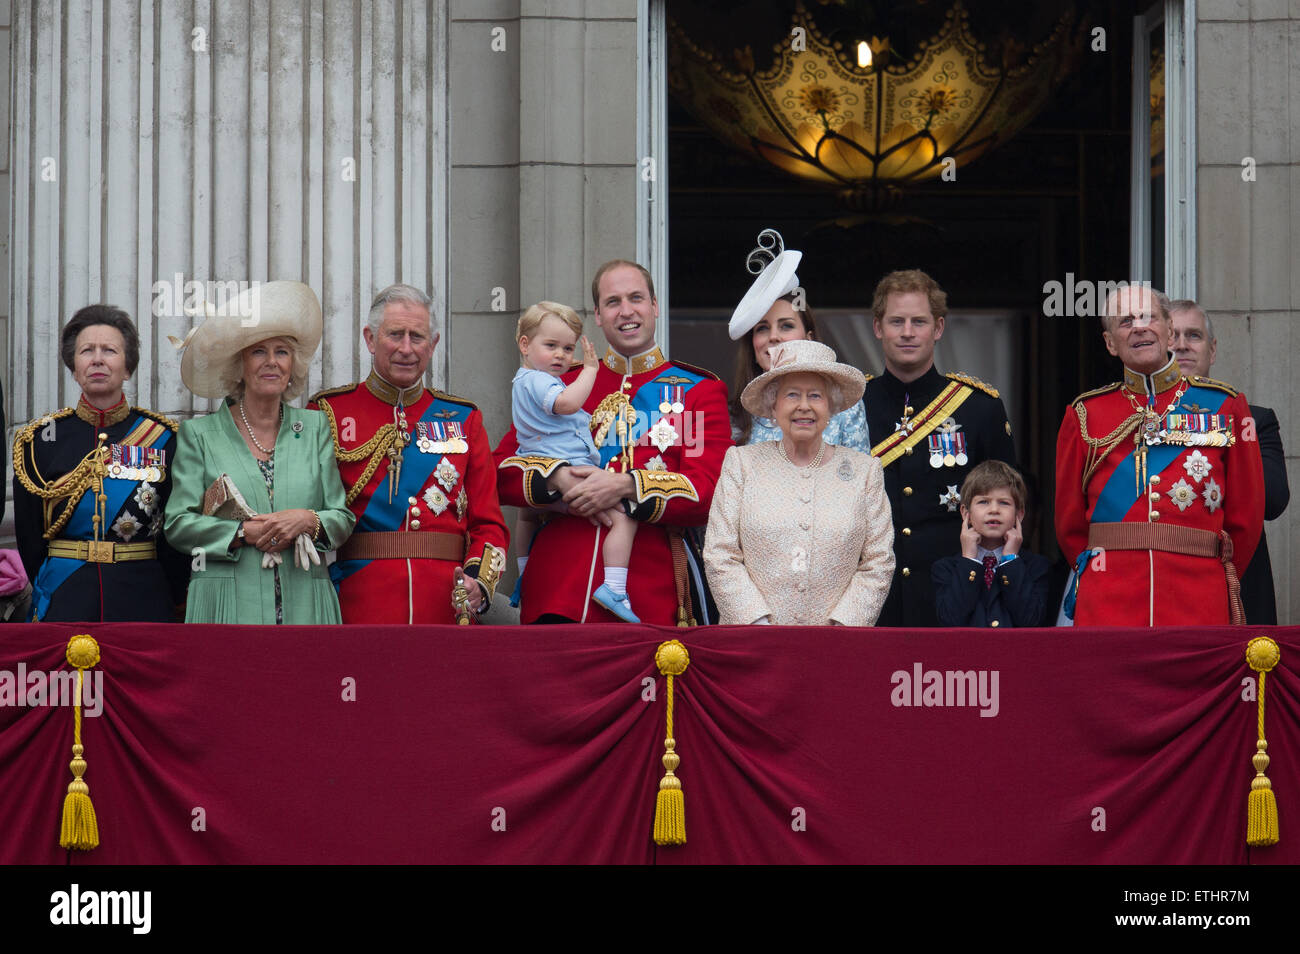 Prince George's première apparition sur le balcon de Buckingham Palace avec la reine Elizabeth et la famille royale britannique. Banque D'Images